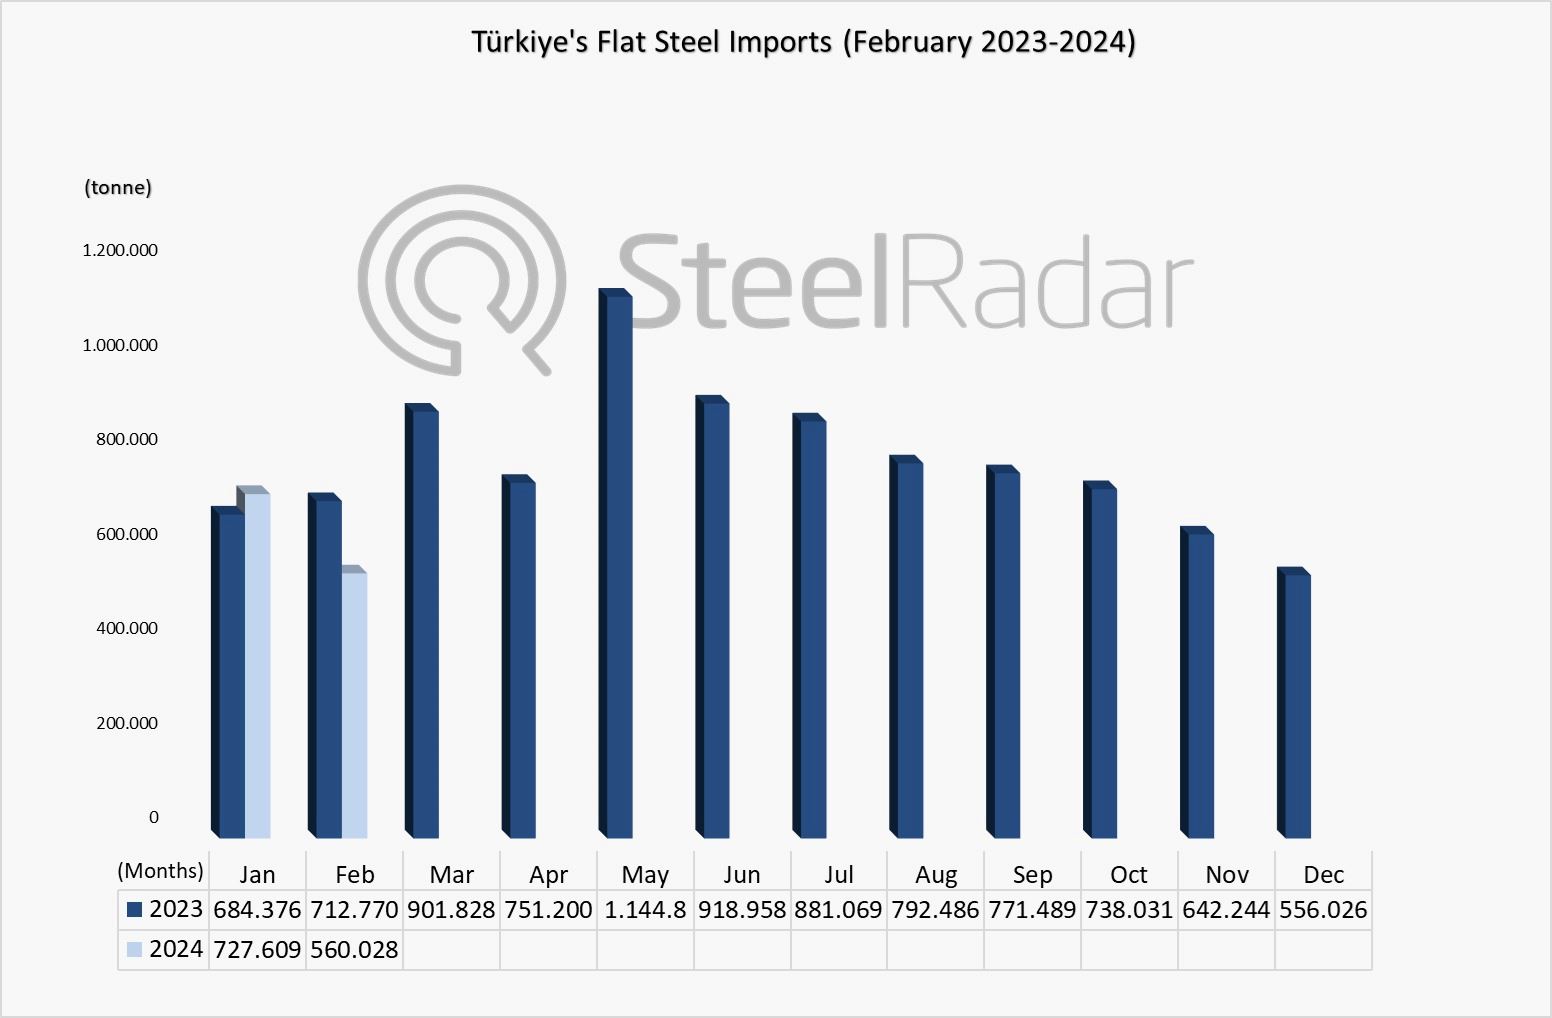 Türkiye's flat steel imports decreased by 21.4% in February